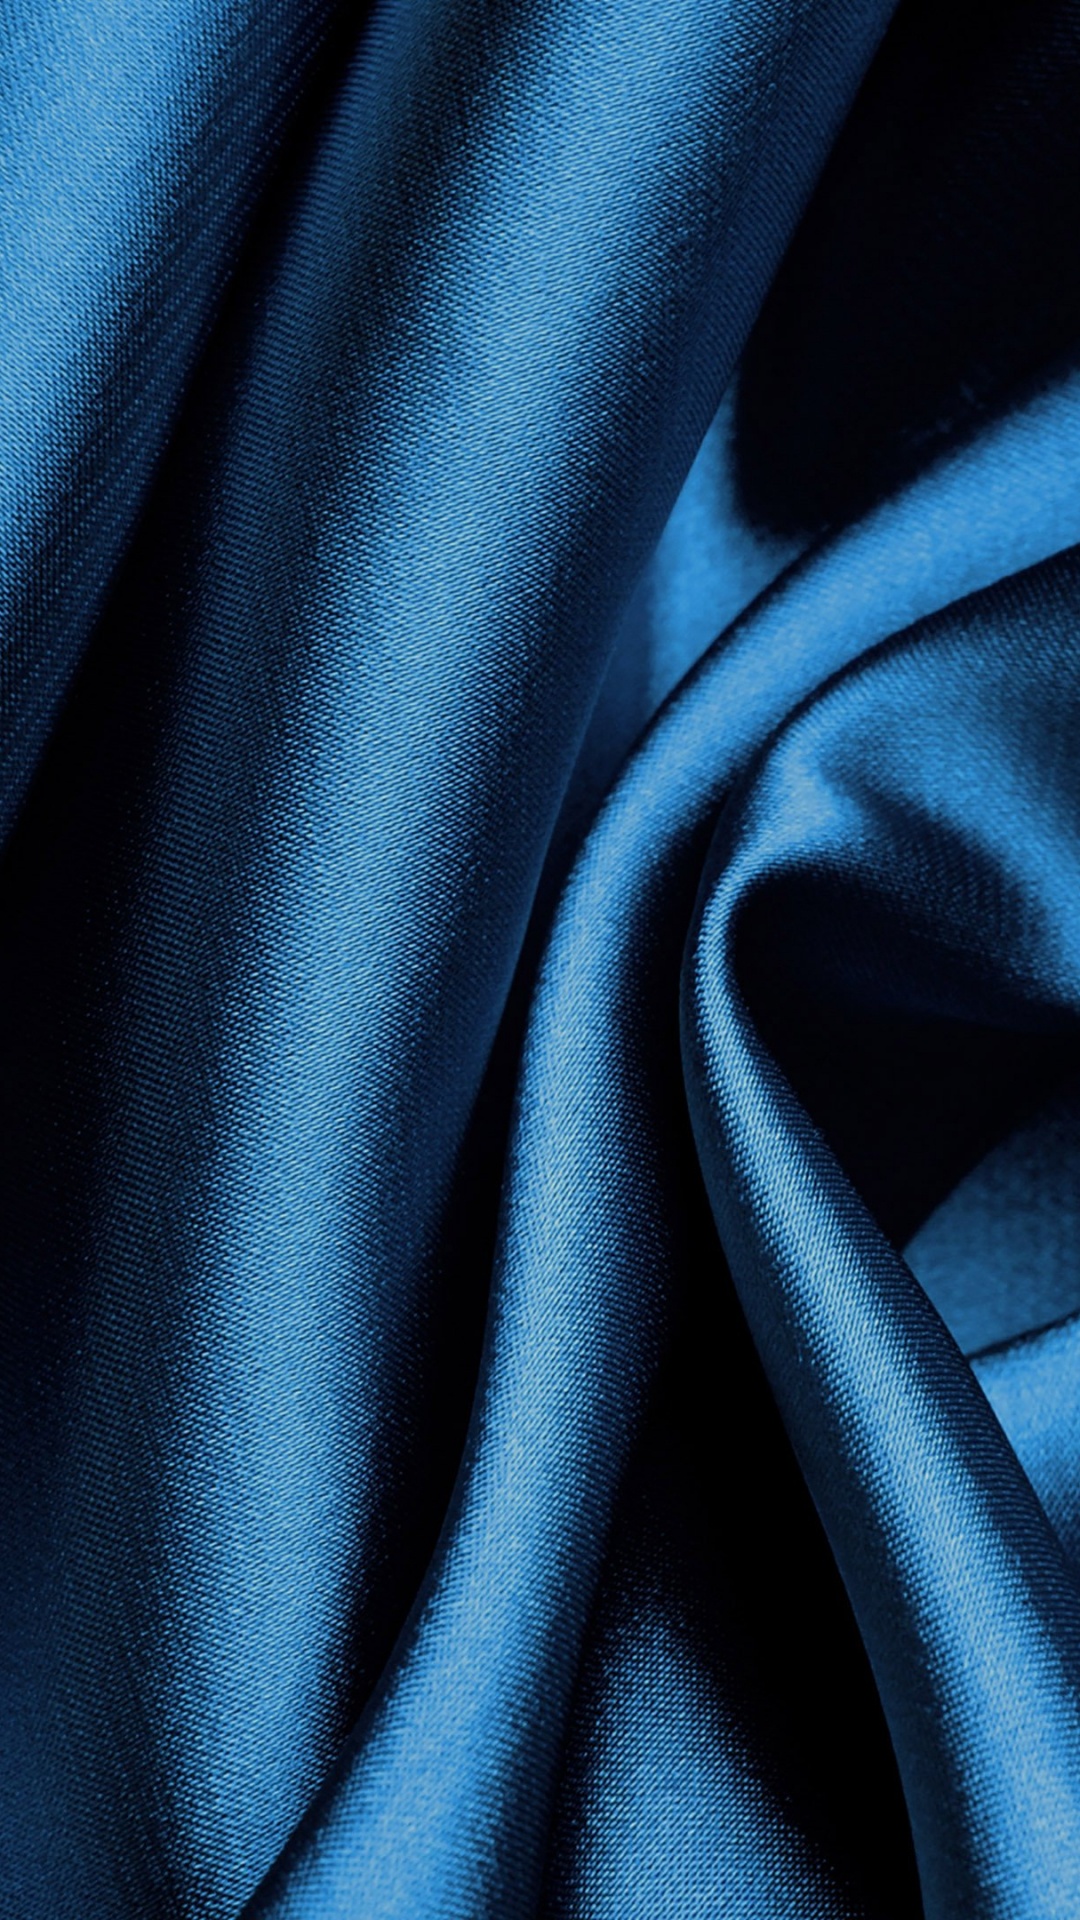 Blaues Textil in Nahaufnahmen. Wallpaper in 1080x1920 Resolution